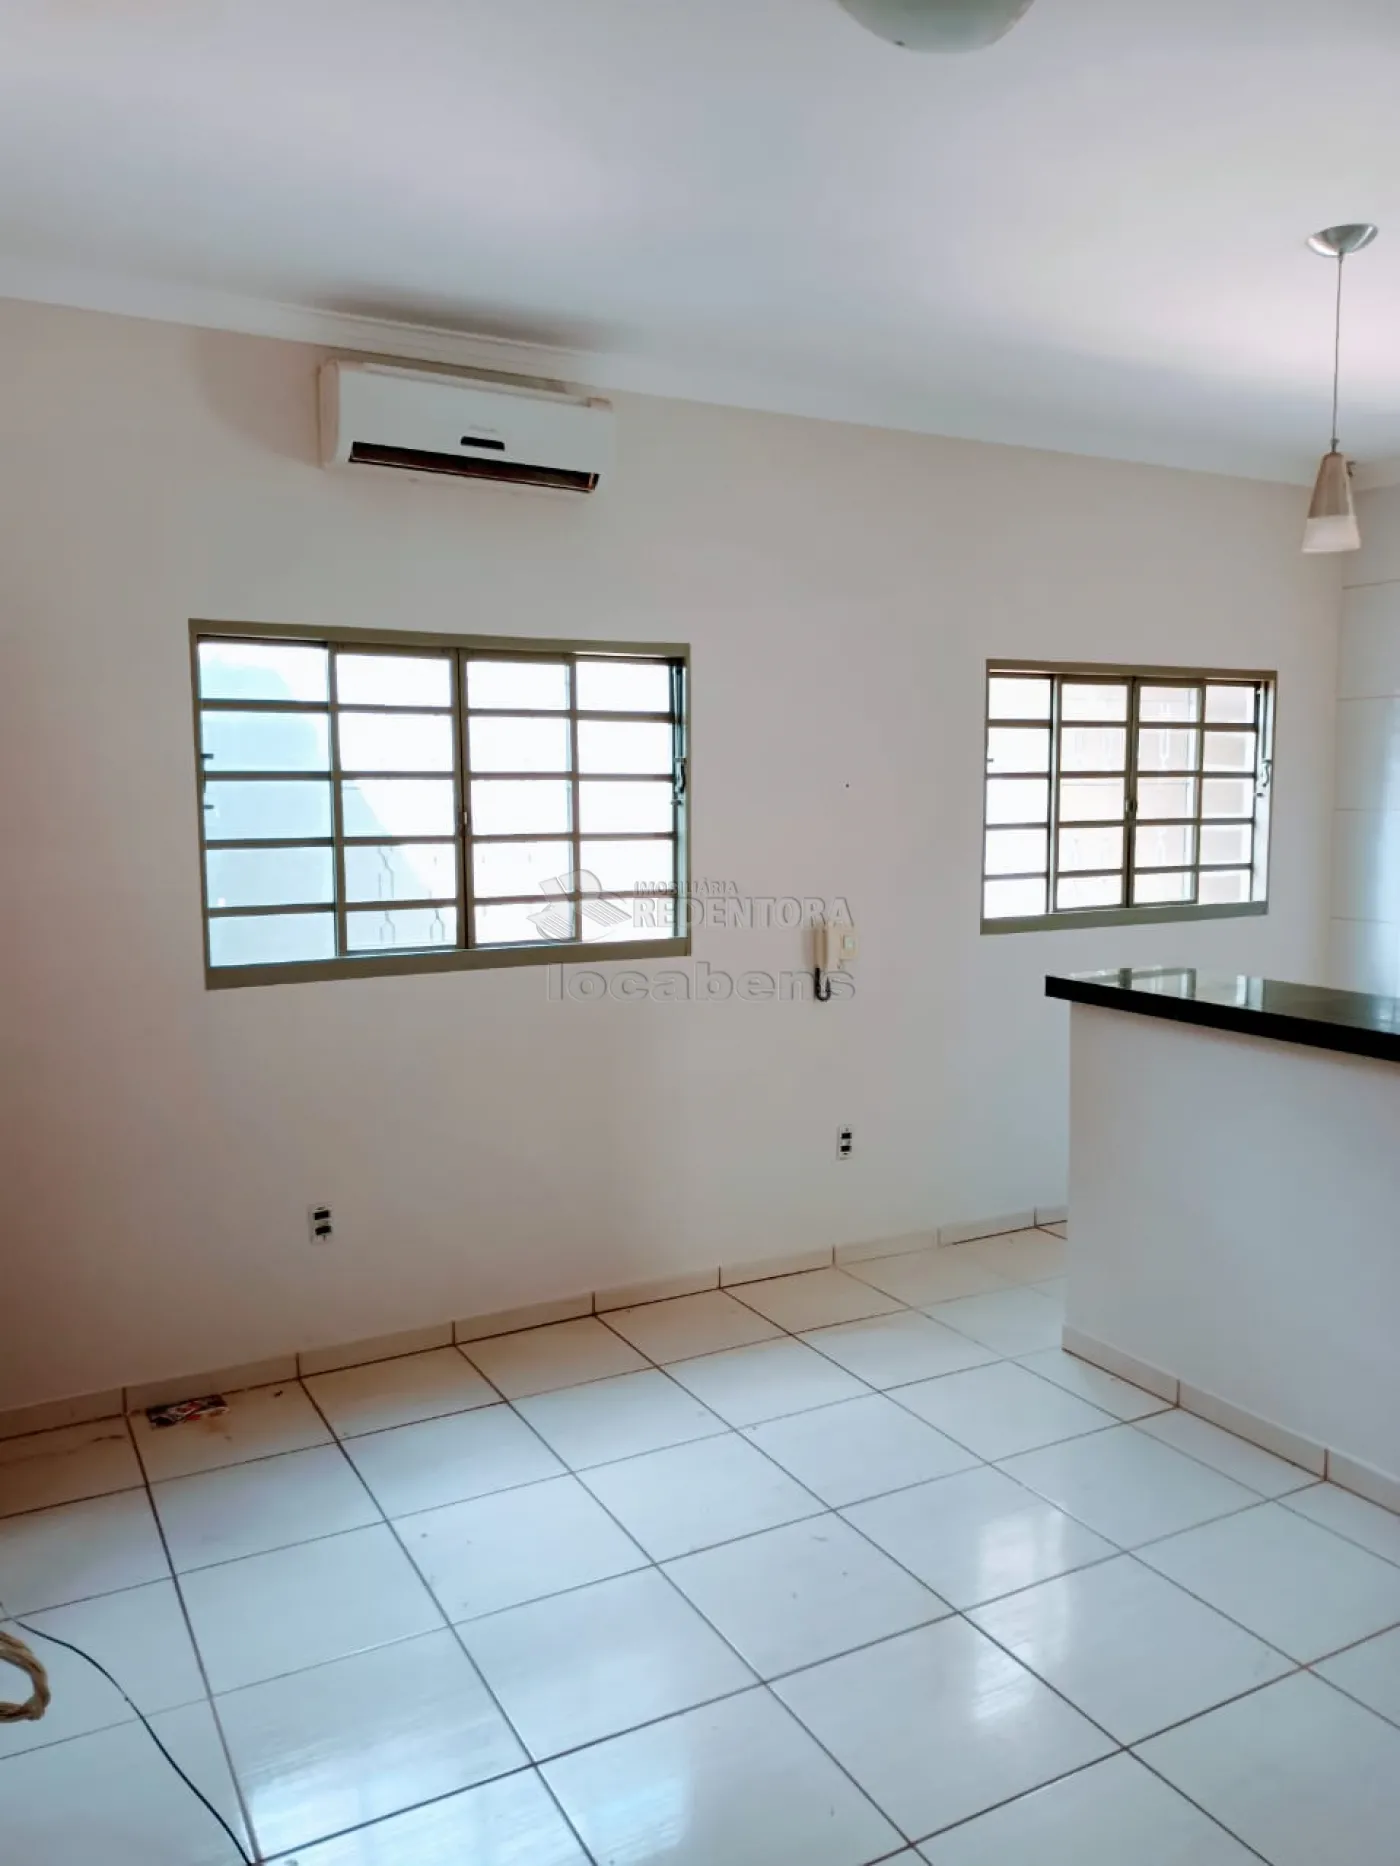 Comprar Casa / Padrão em São José do Rio Preto R$ 325.000,00 - Foto 11